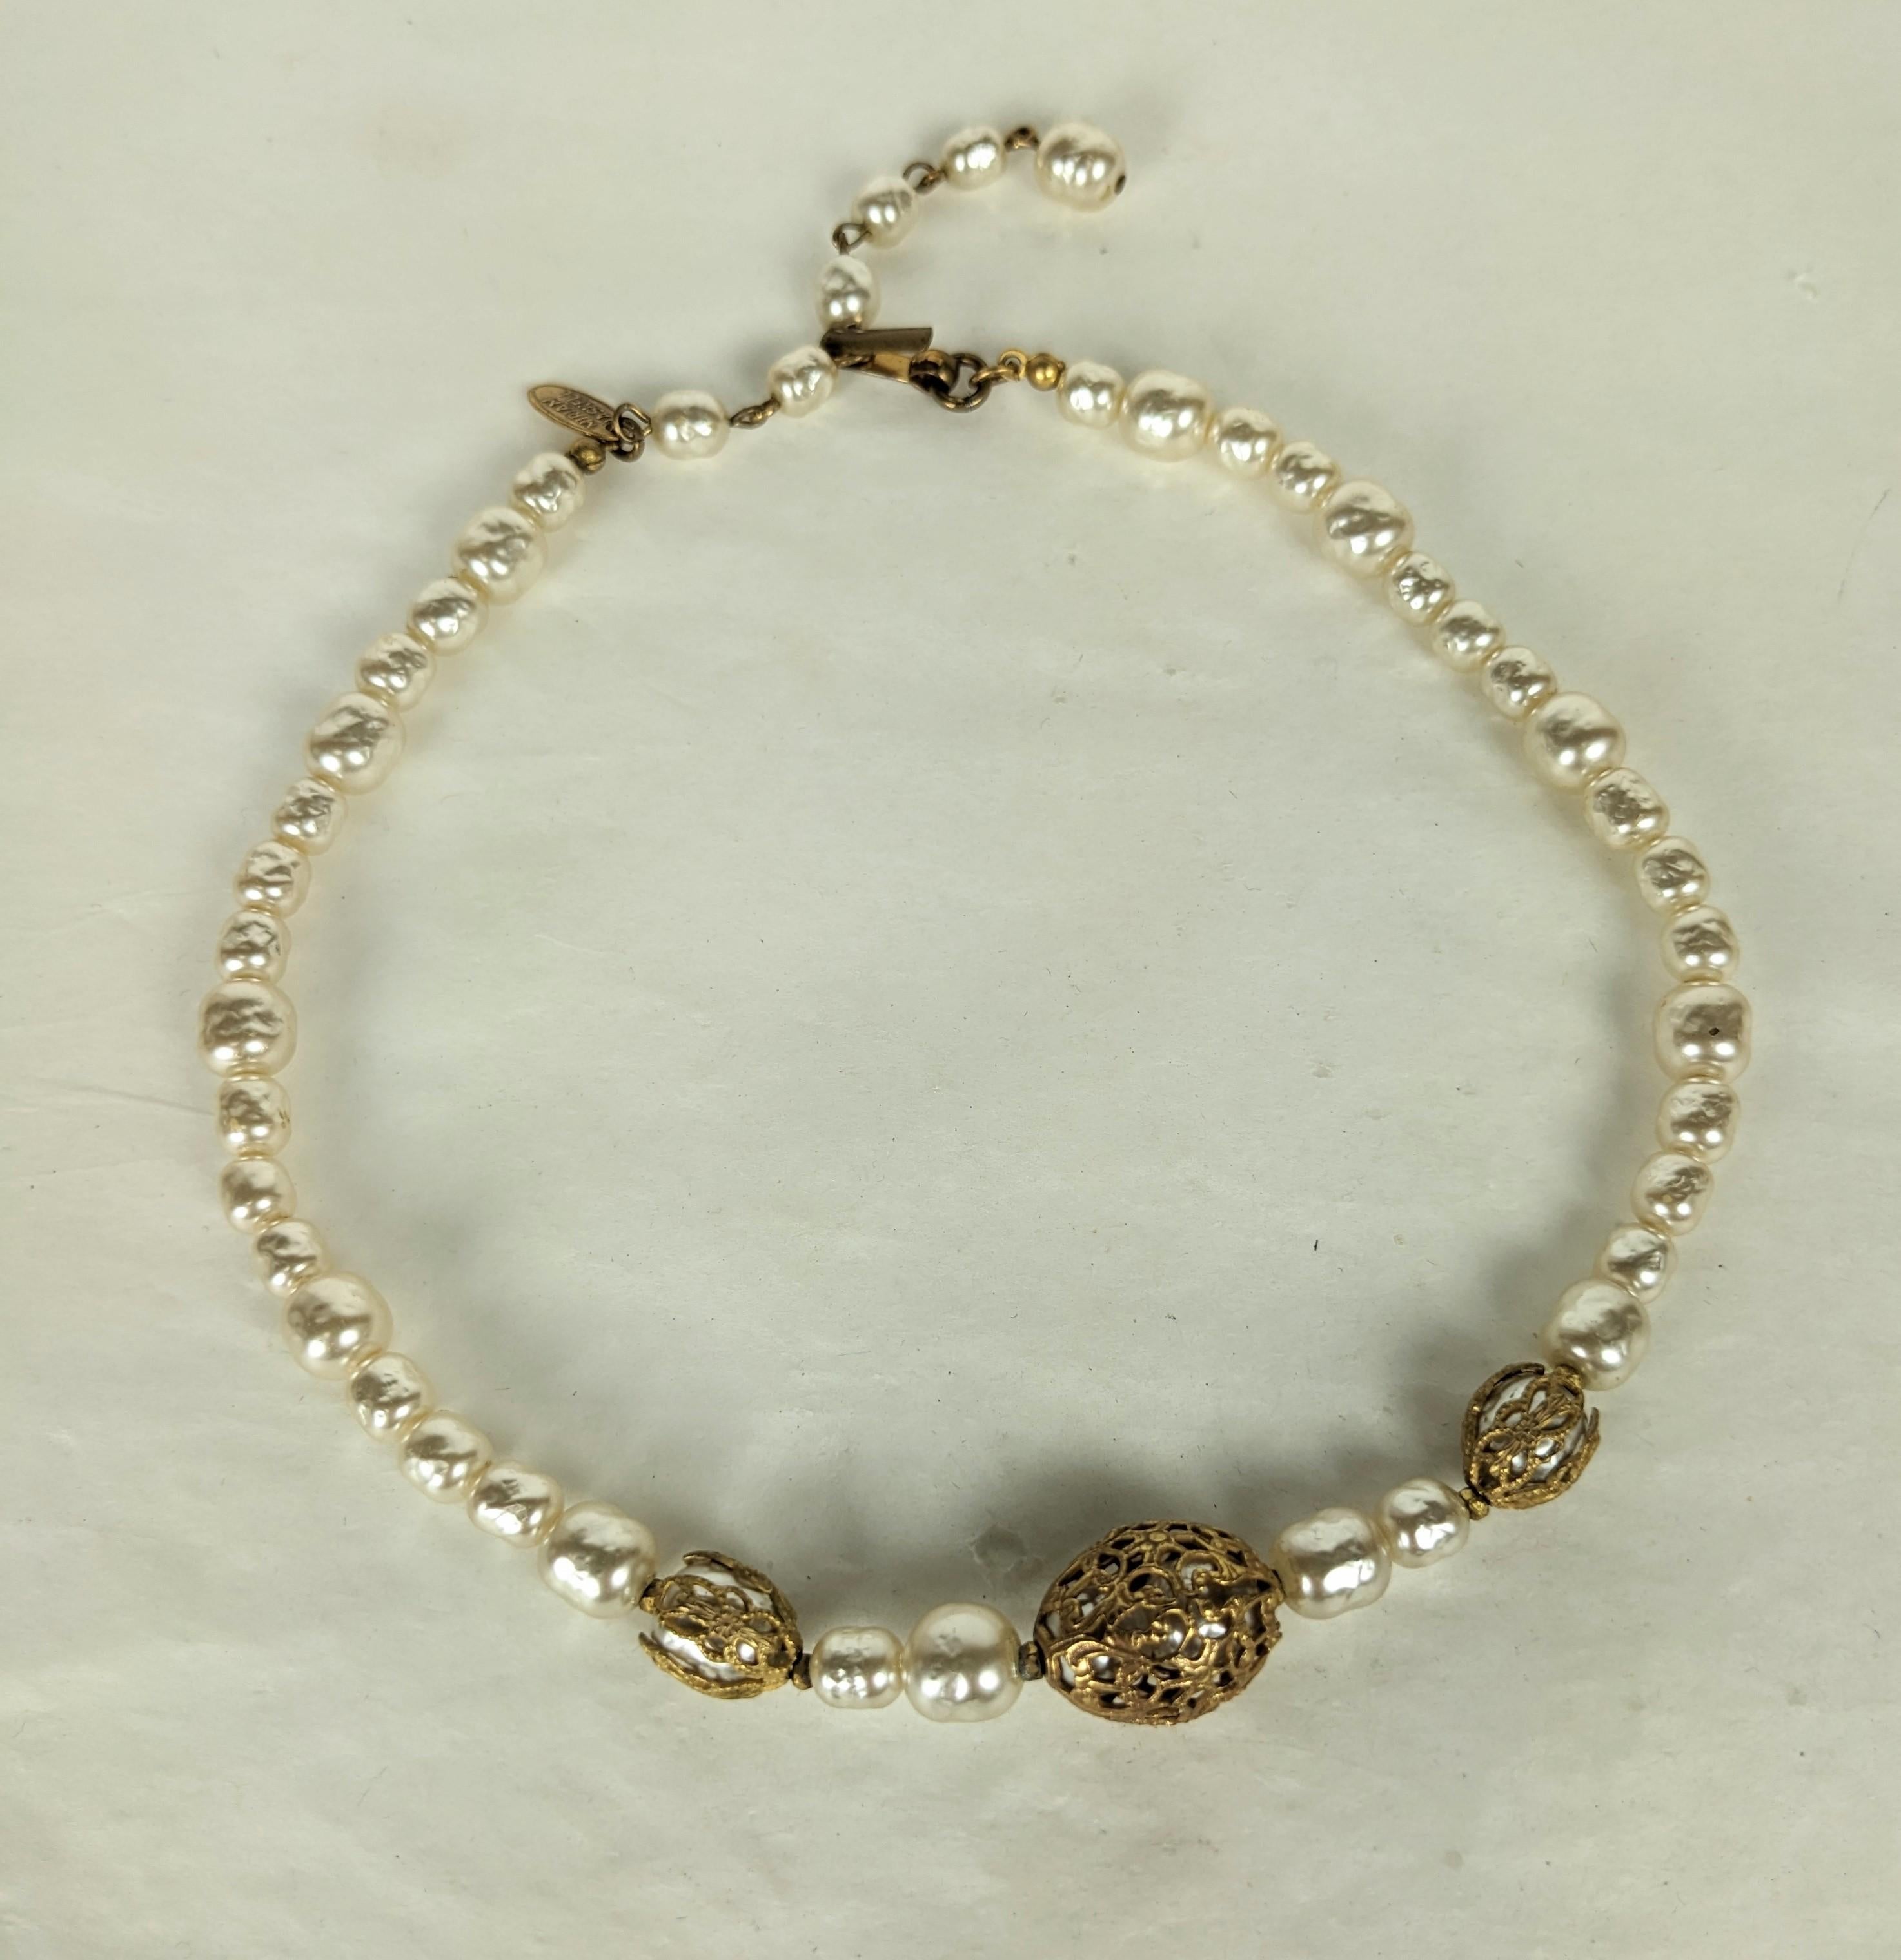 Elegant collier ras de cou en perles baroques et plaques d'or russes signé Miriam Haskell avec des perles en cage enveloppées dans des capuchons en filigrane. Fermoir à crochet et rallonge. Excellent état, Signé. Longueur 14,25